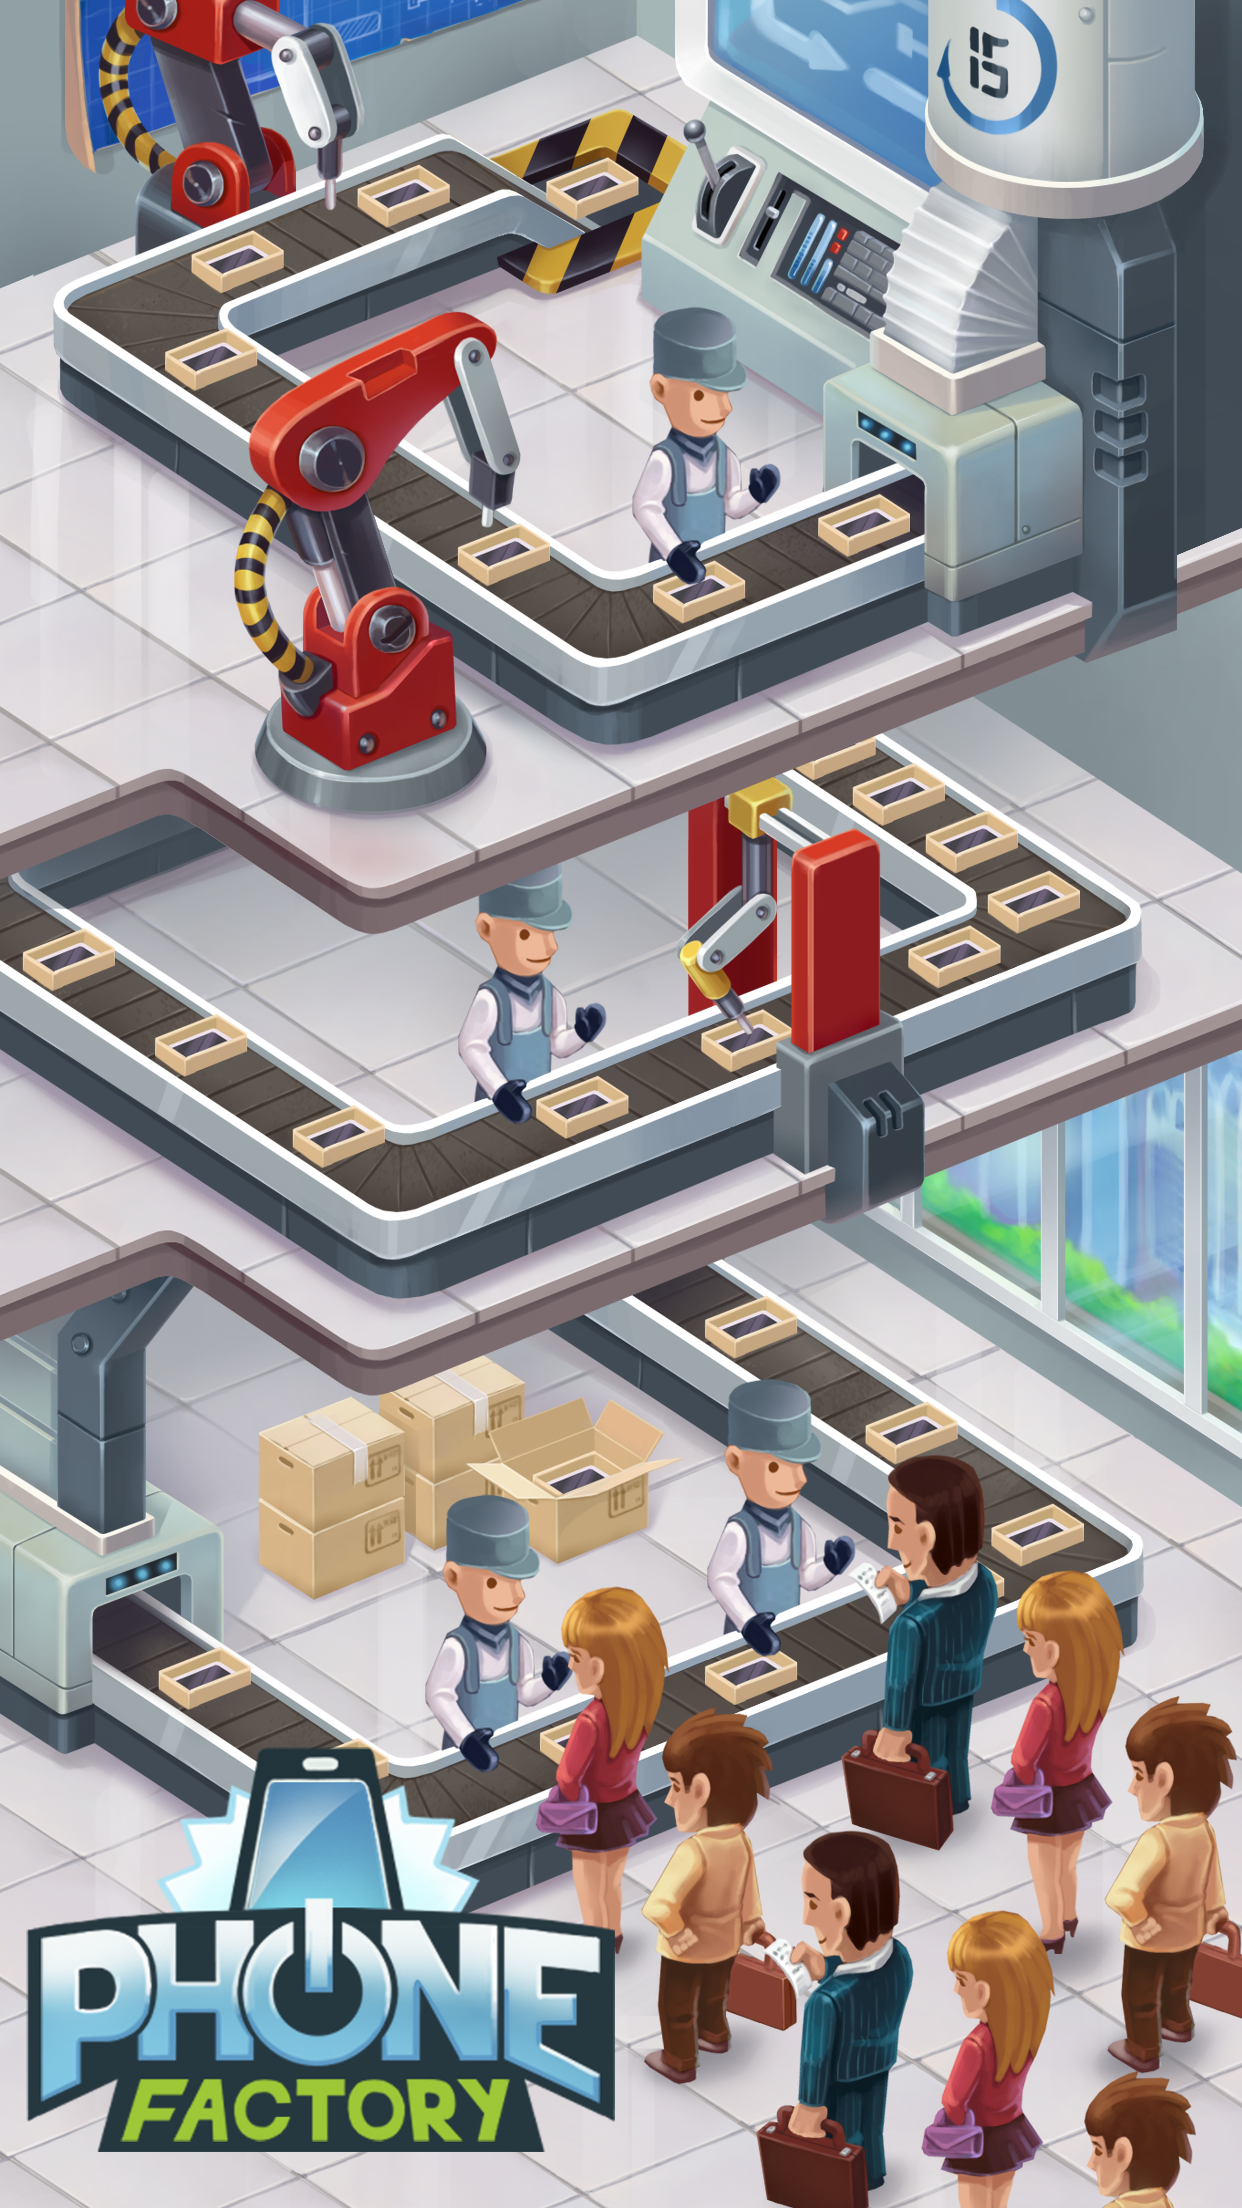 Screenshot 1 of Phone Factory - jogo ocioso de criação de smartphones 0.8